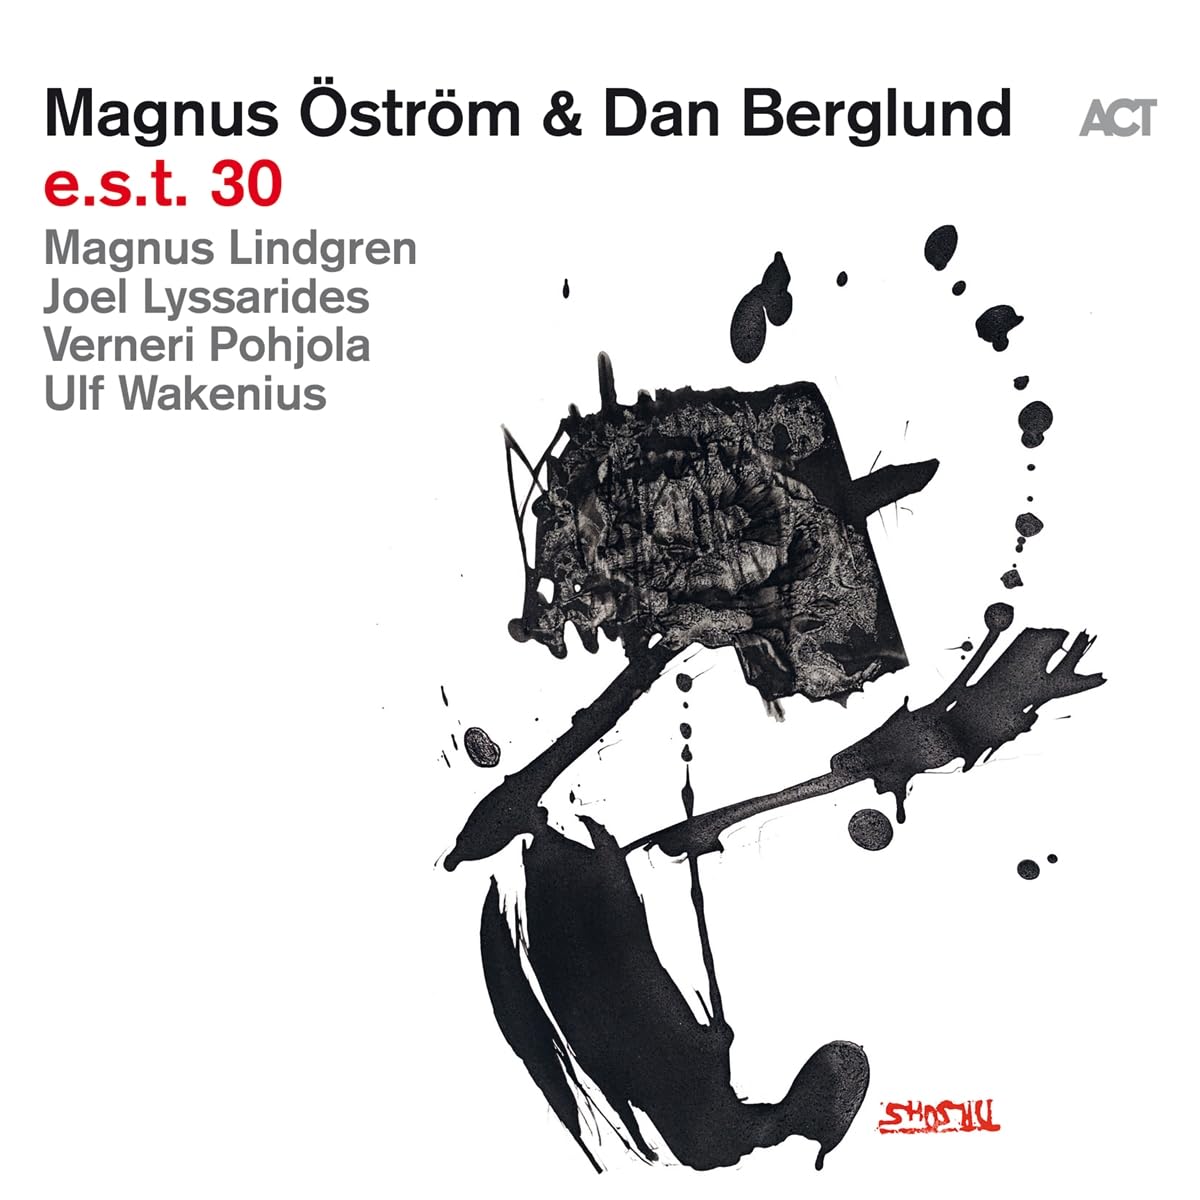 e.s.t. 30 - Magnus strm + Dan Berglund